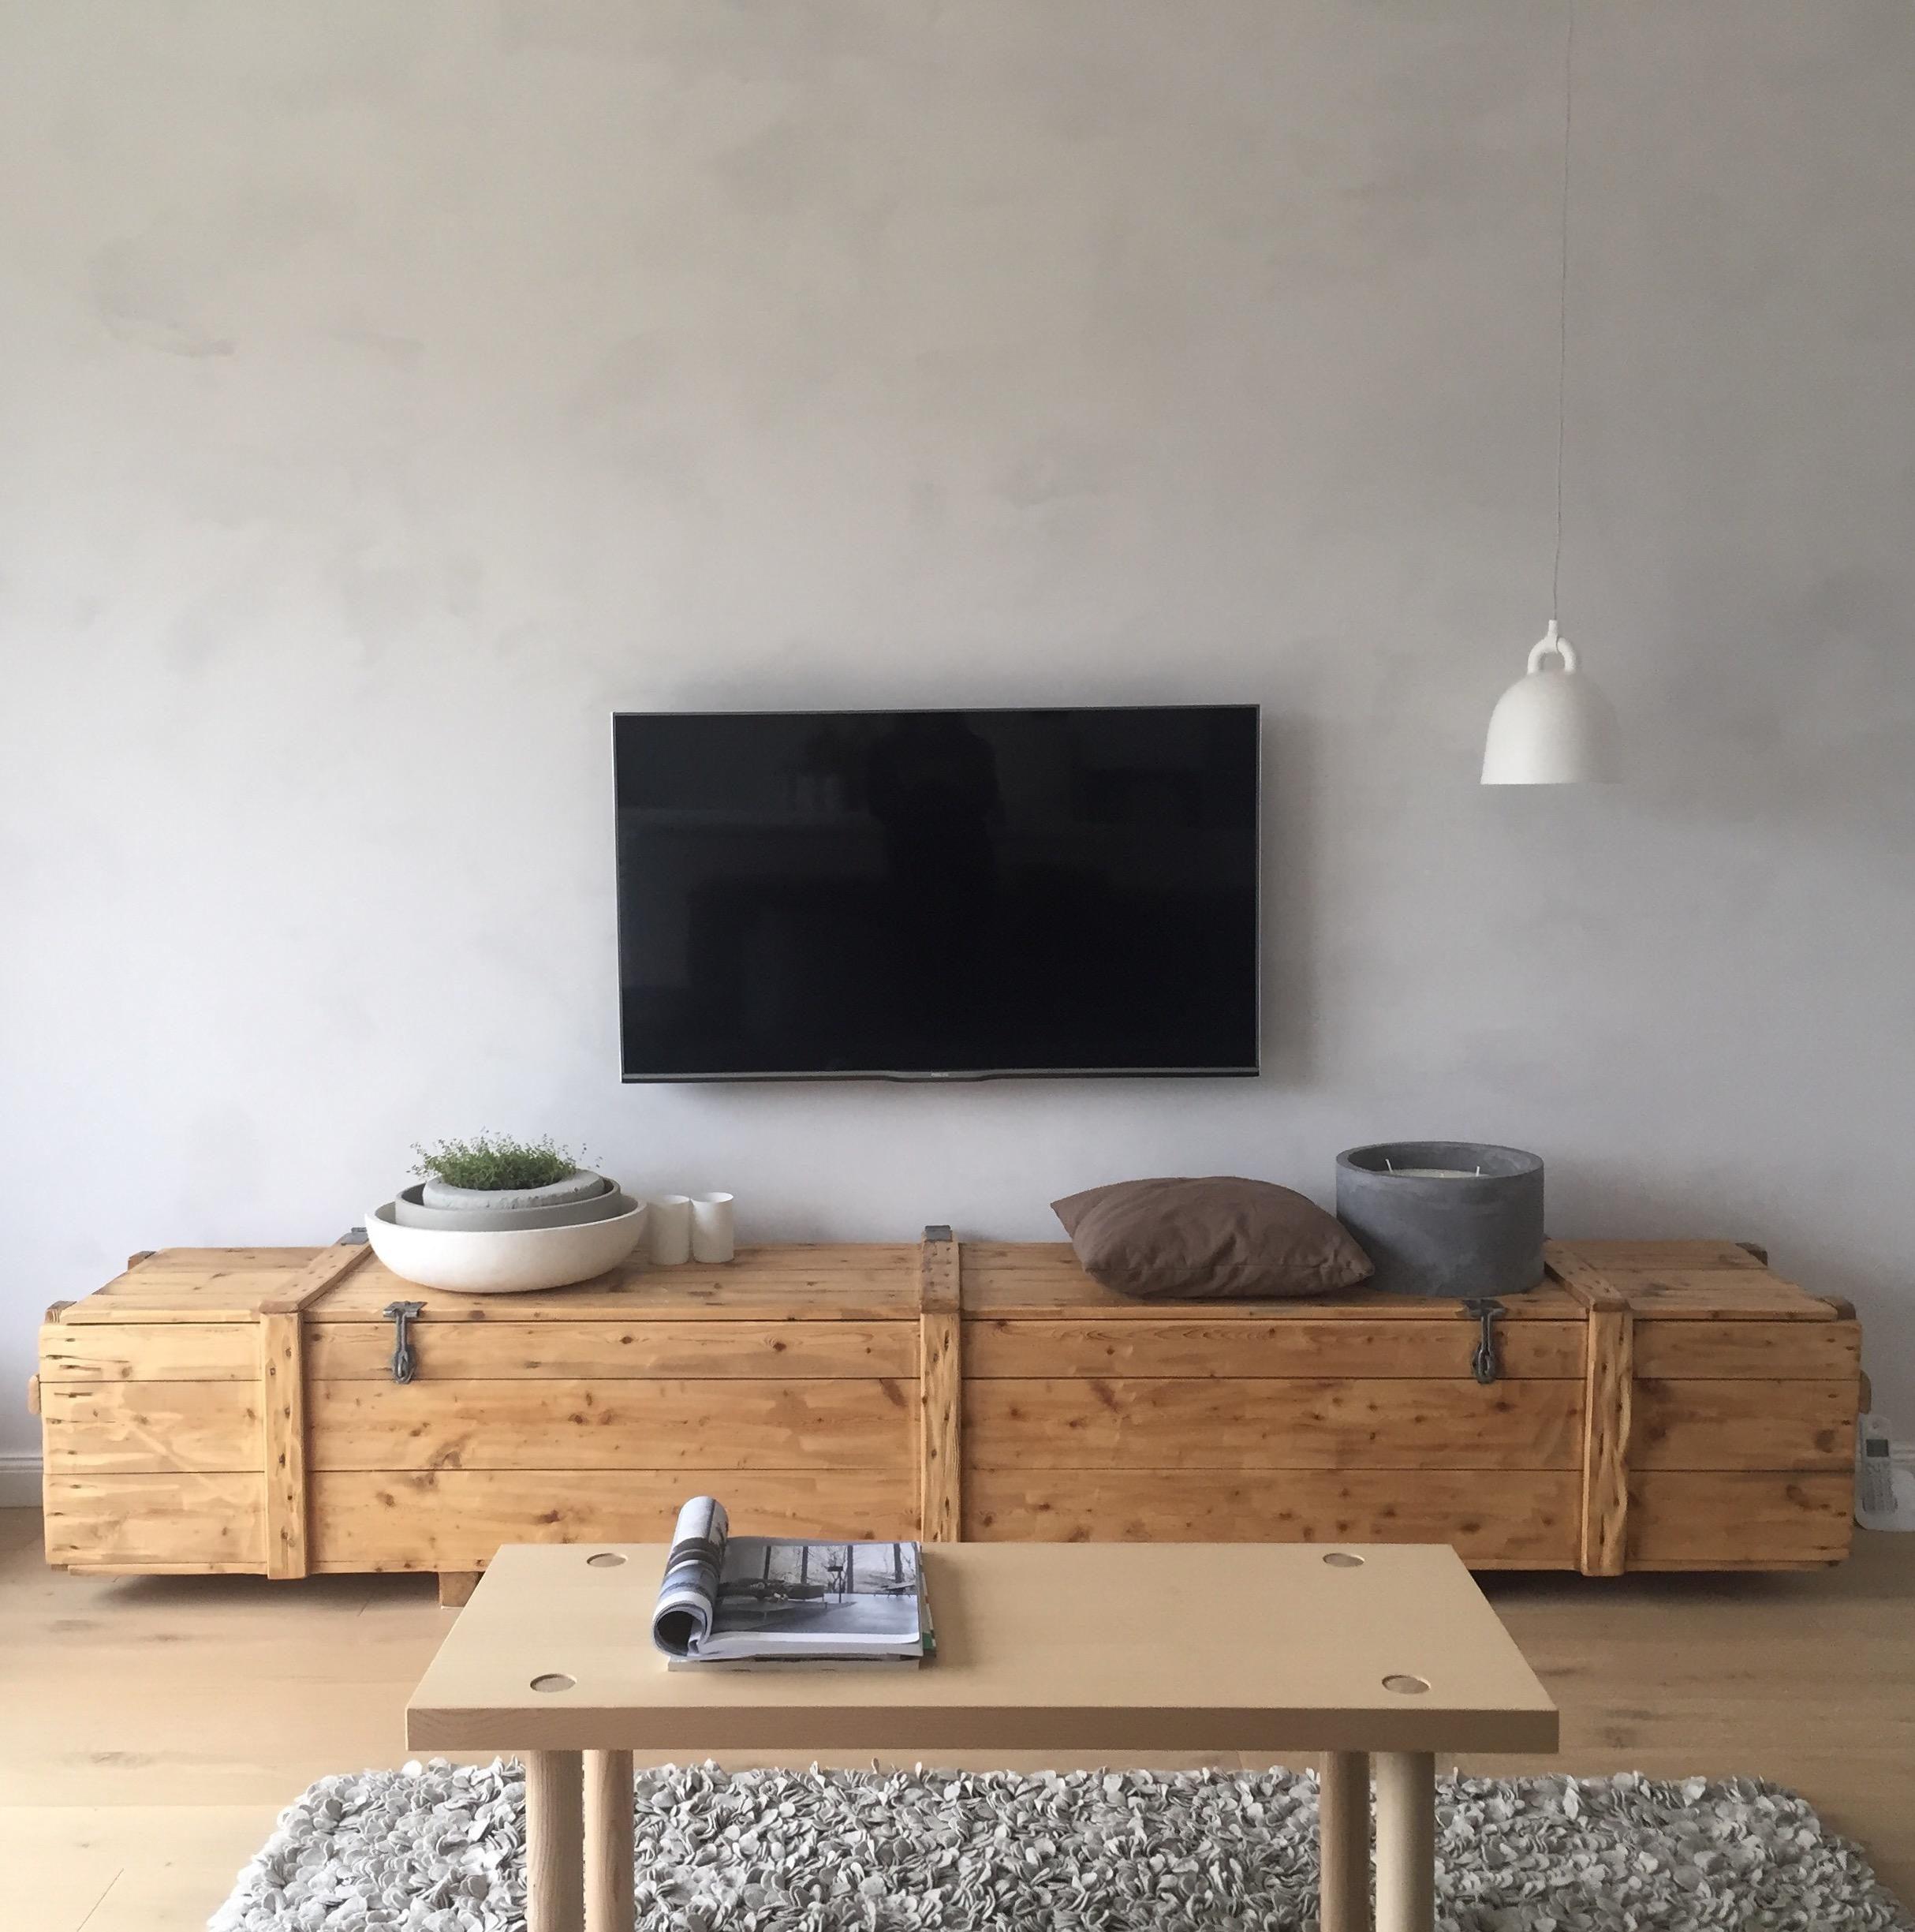 Unsere Kuschelecke. #livingroom #connox #normanncopenhagen #kuschelecke #leuchte #hygge #couchtisch #ikea #cozy #home